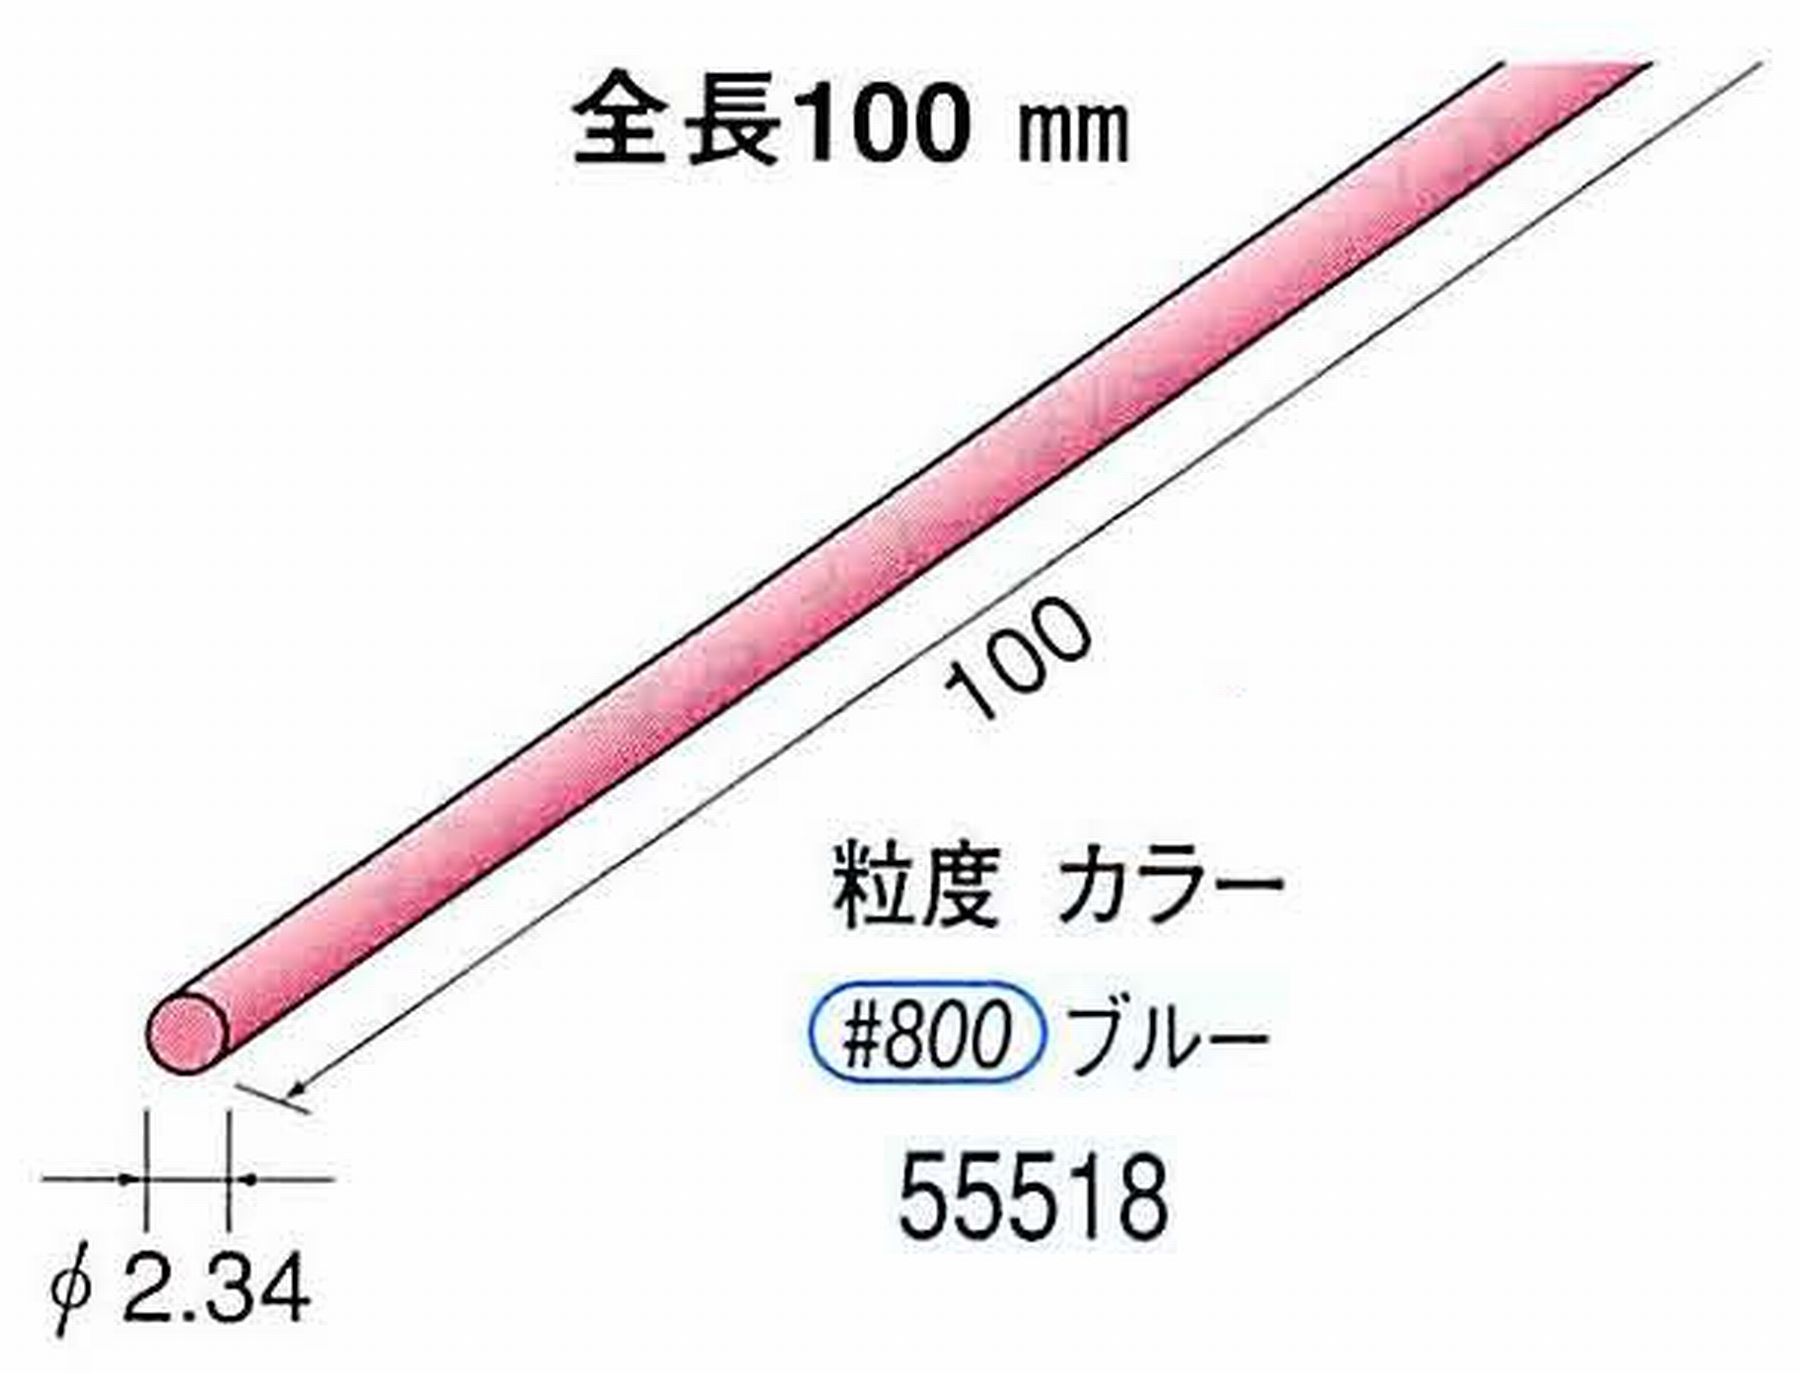 ナカニシ/NAKANISHI セラファイバー砥石 全長100mm ブルー φ2.34mm 55518